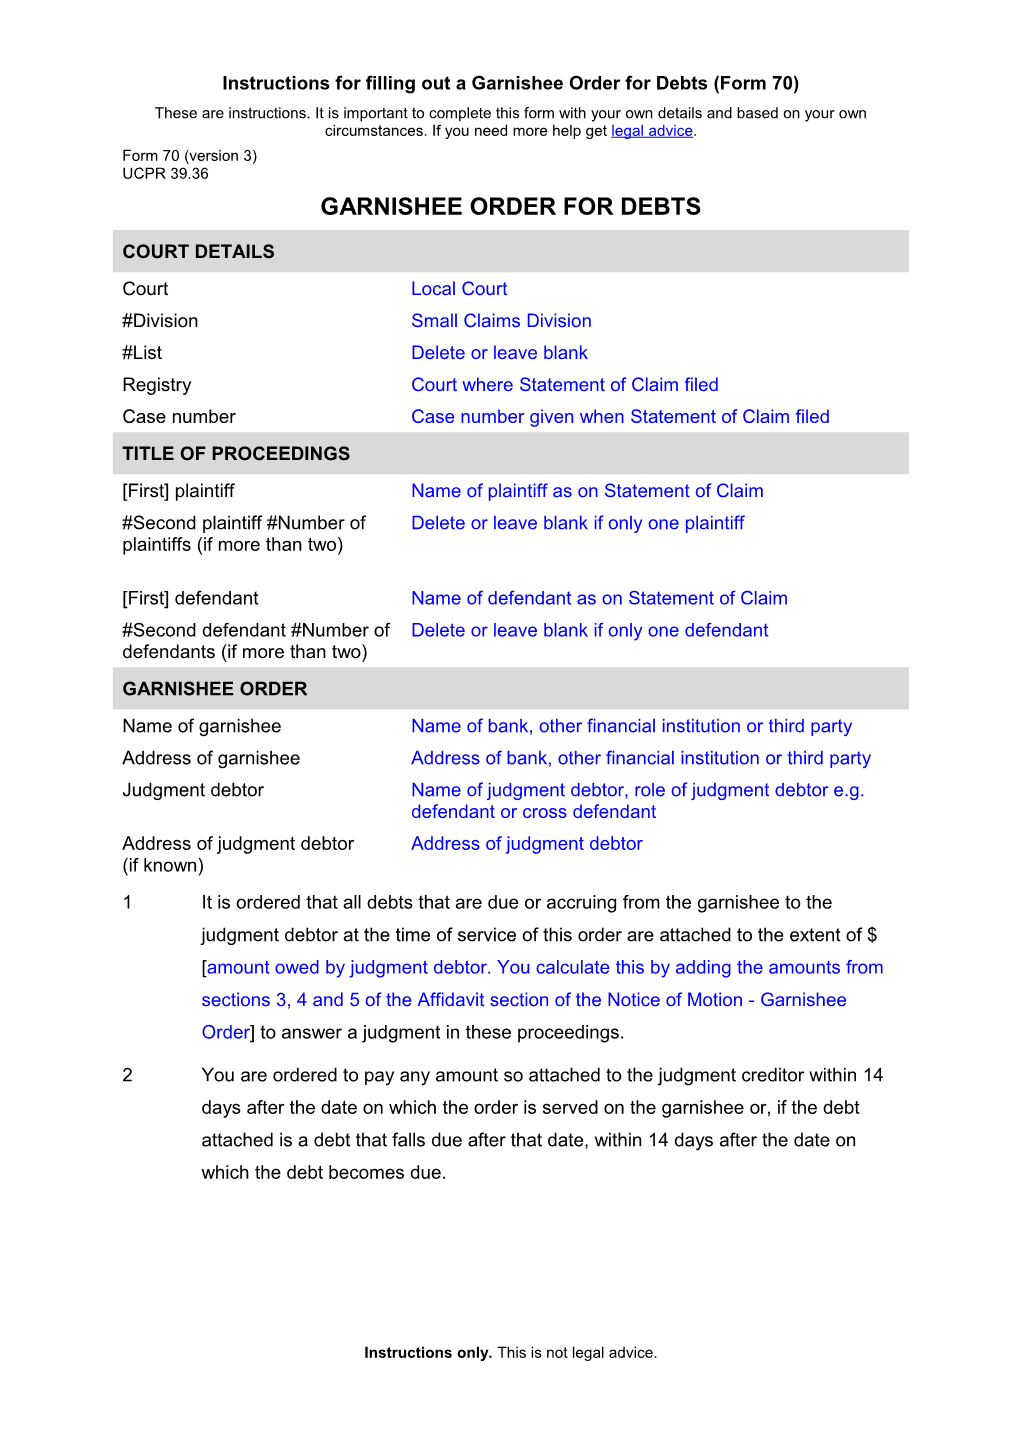 NSW UCPR Form 70 (Version 2) - Garnishee Order for Debts